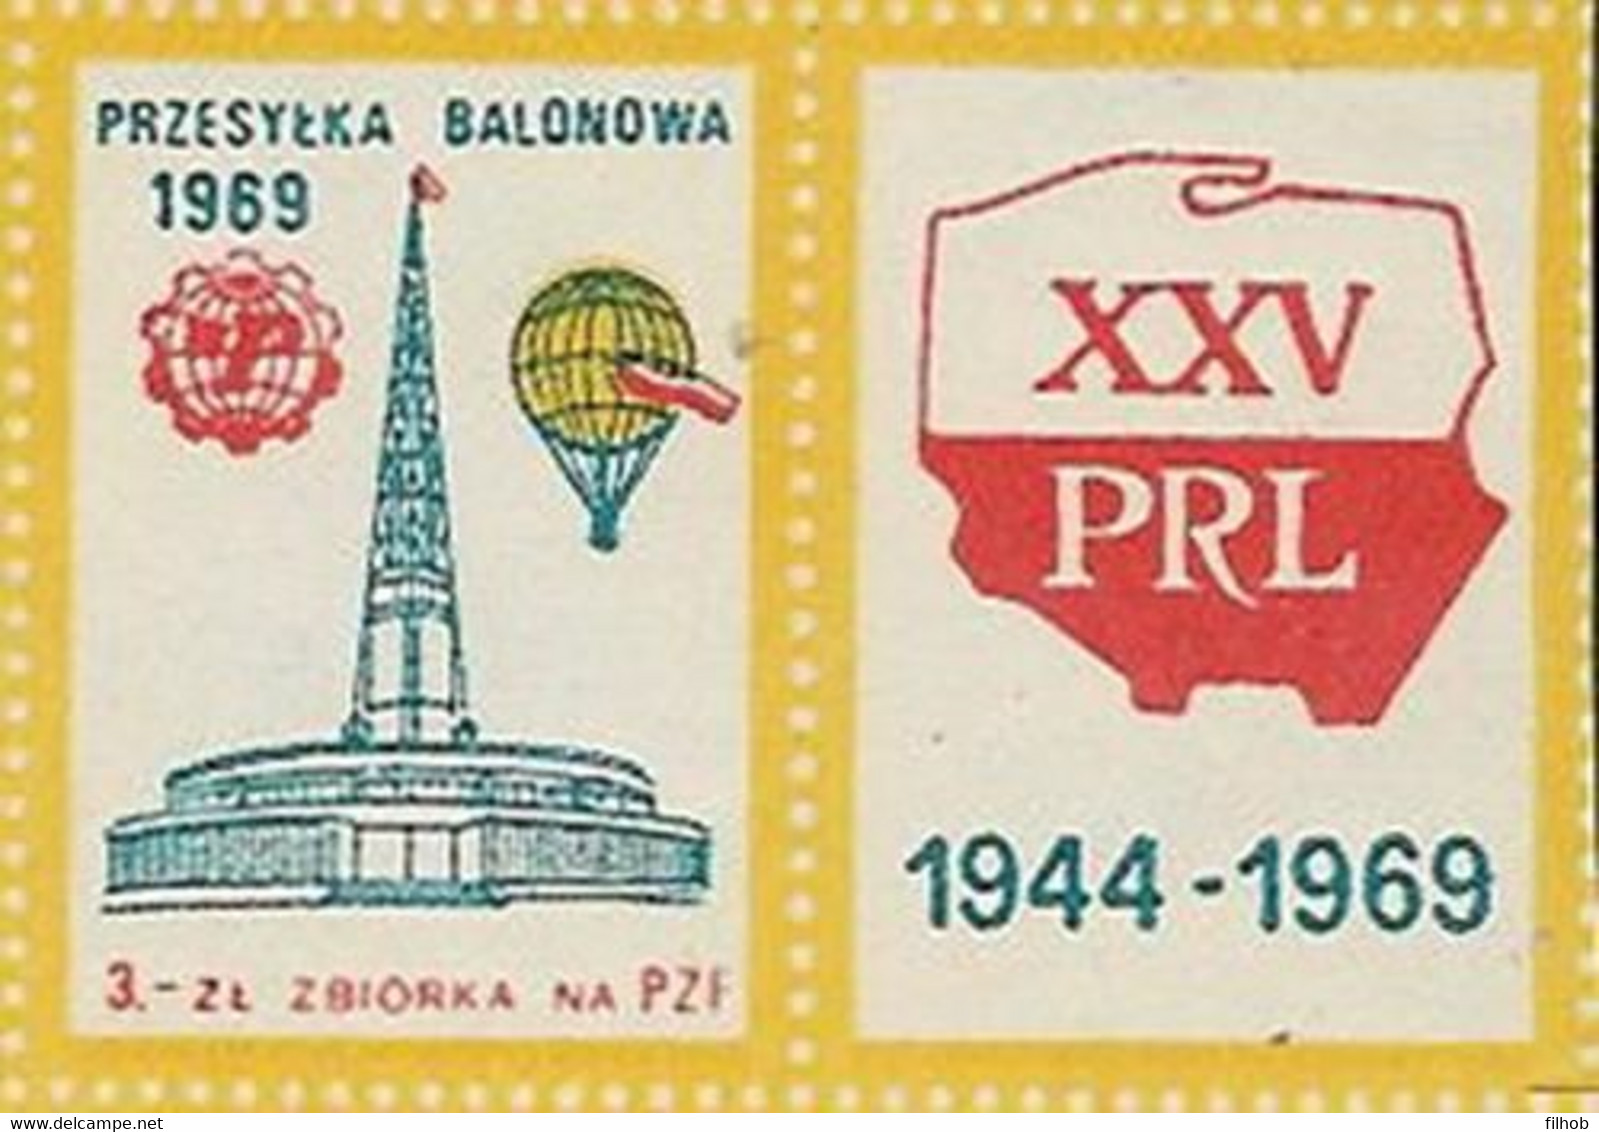 Poland Label - Balloon 1969 (L026): Poznan Fair XXXVIII MPT 25 Y. PRL - Balloons